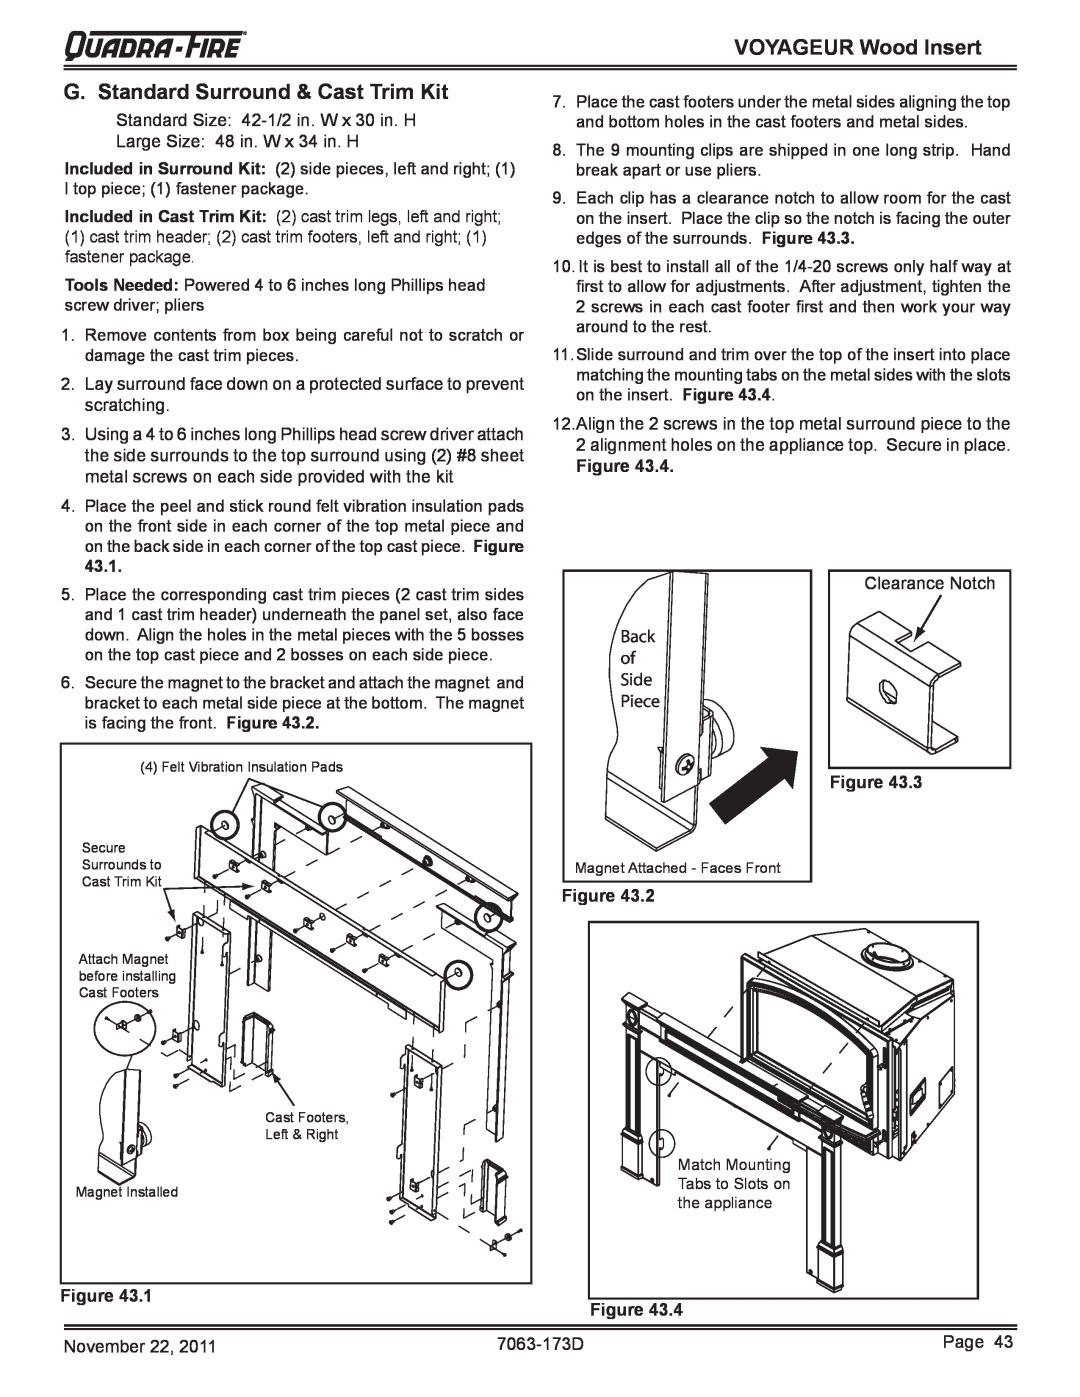 Quadra-Fire VOYAGEUR-MBK, VOYAGEUR-PMH owner manual G. Standard Surround & Cast Trim Kit, VOYAGEUR Wood Insert, Figure 